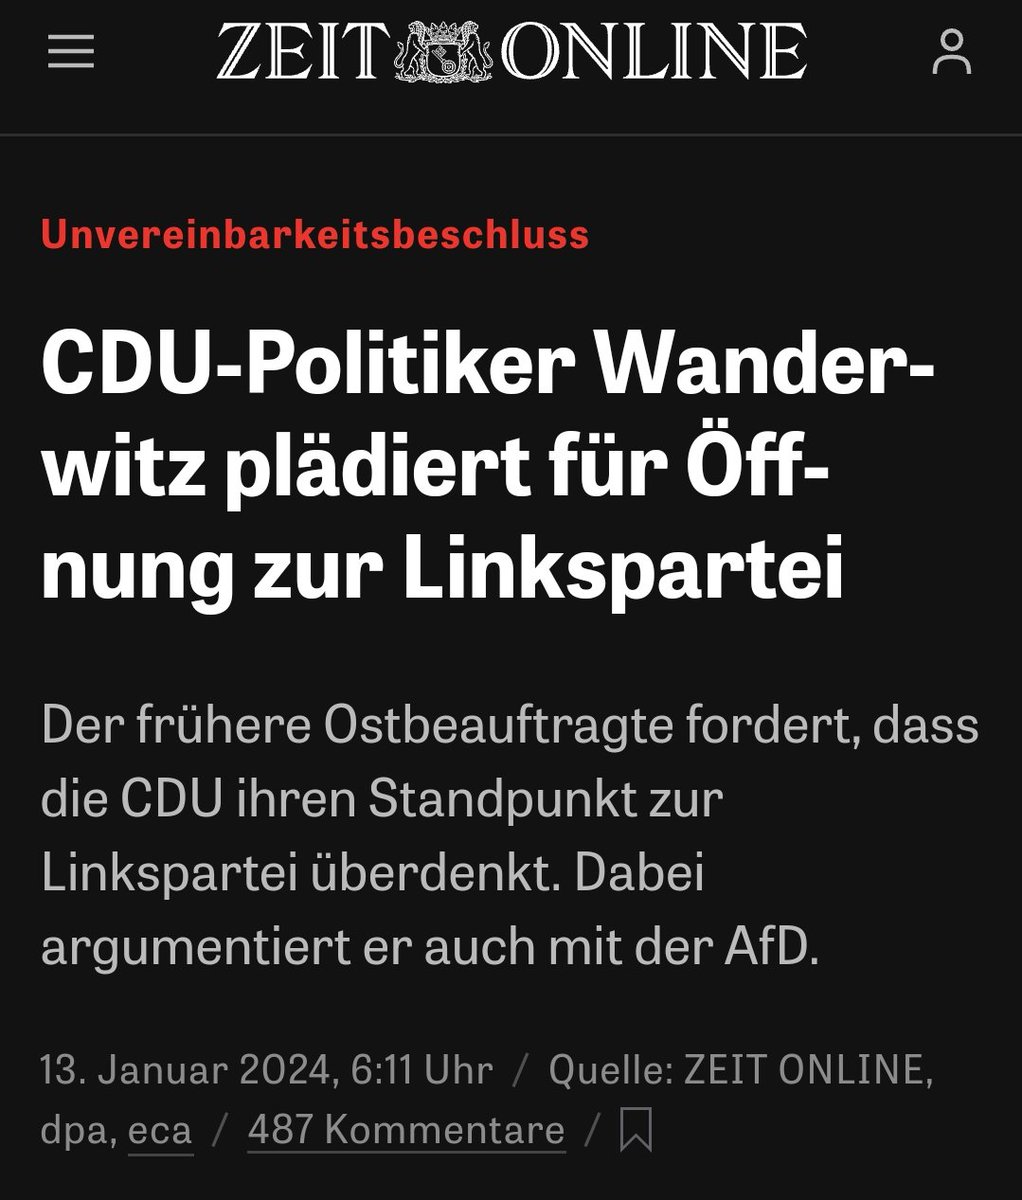 Wer immer noch glaubt, die #CDU würde nicht mit jedem ins Bett steigen...

Sogar die SED steht zur Disposition, aber wahrscheinlich würden sie mit den Grünen und ggf. der SPD koalieren.

Es bleibt also alles wie gehabt, keine Sorge 🤷🏼‍♂️

#btw2025